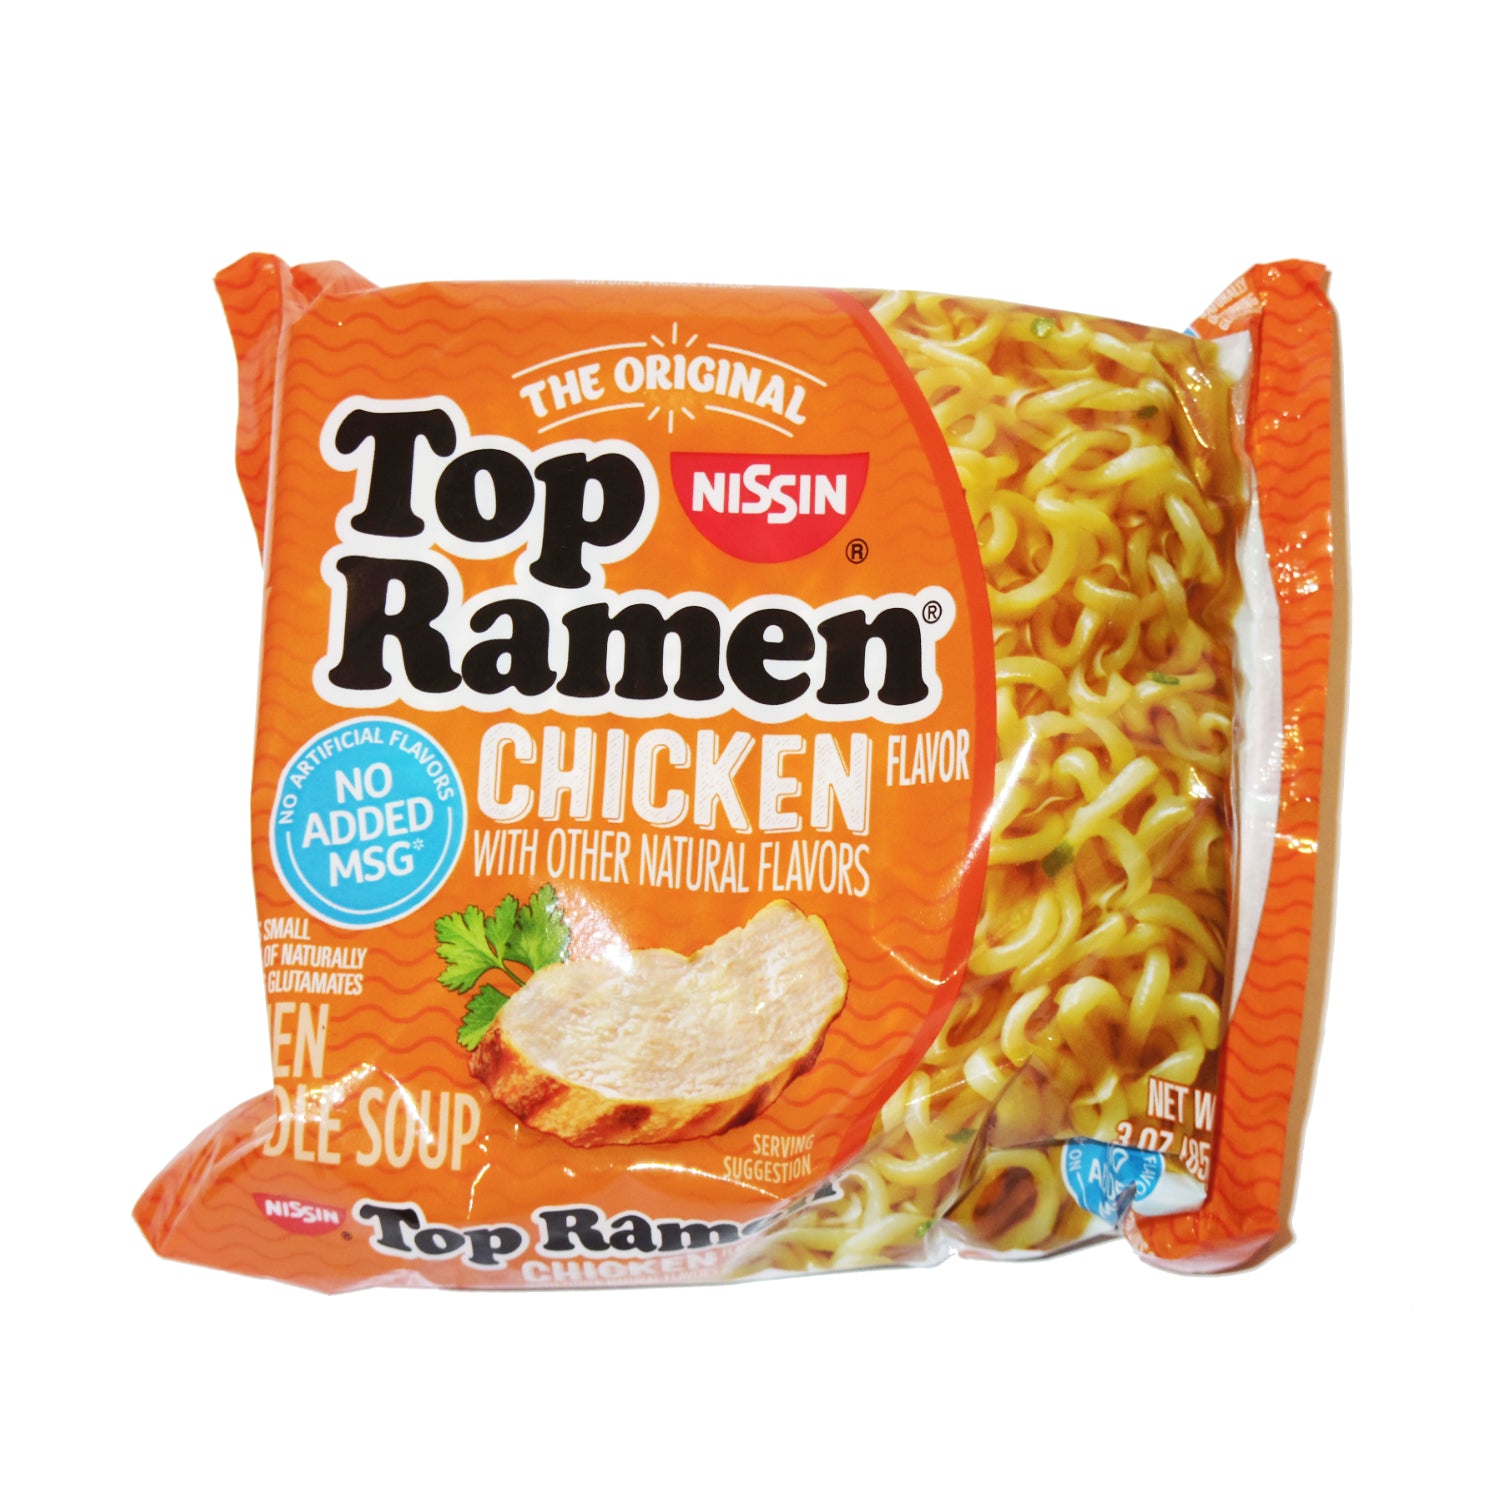 Top Ramen (chicken flavored)